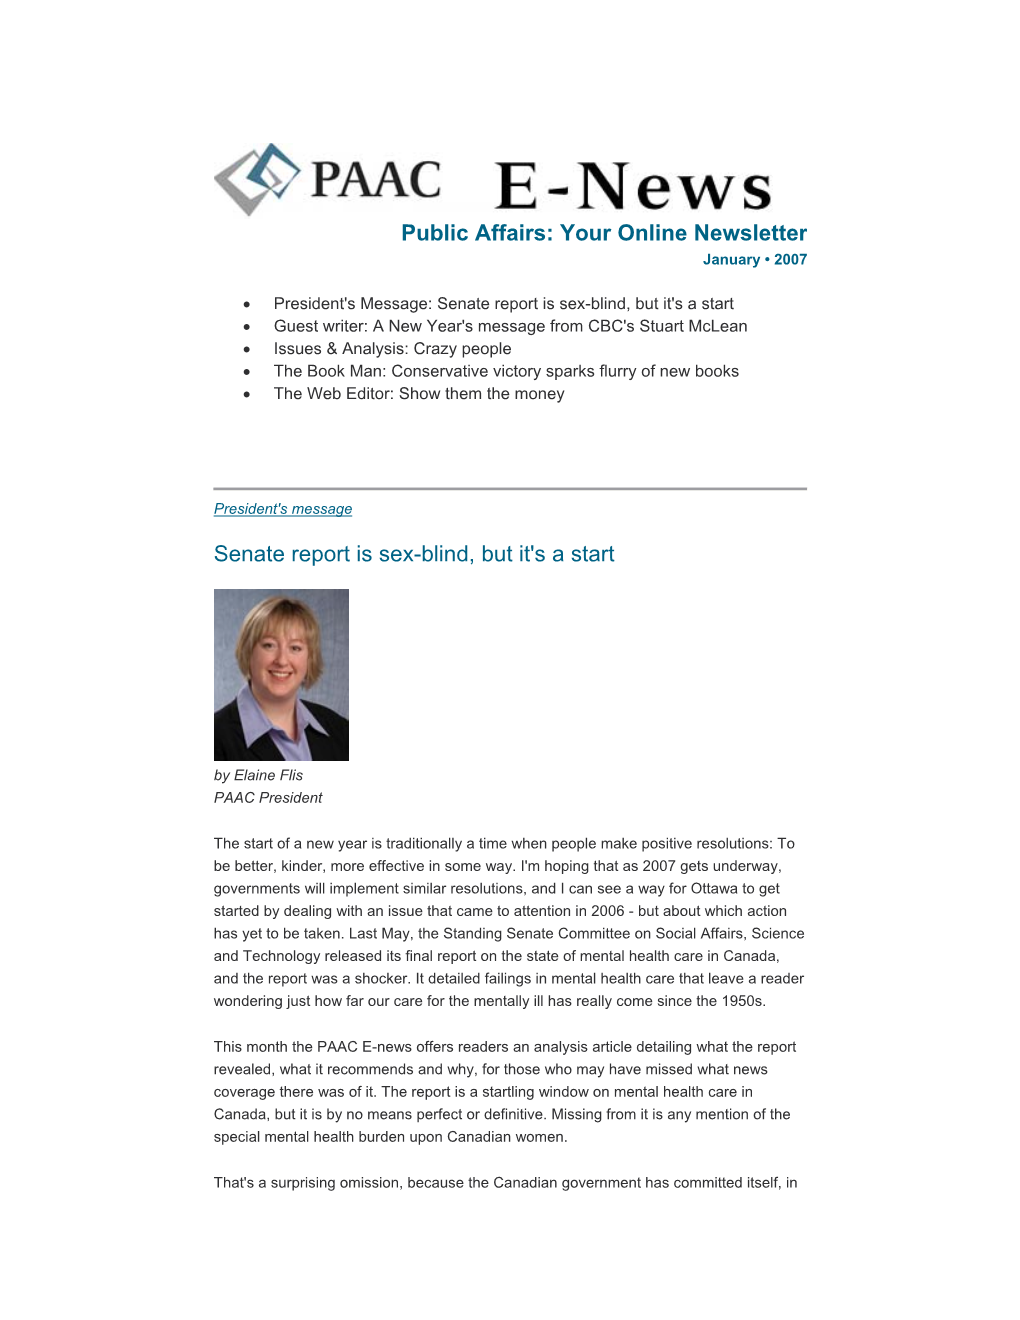 PAAC E-News, January, 2007